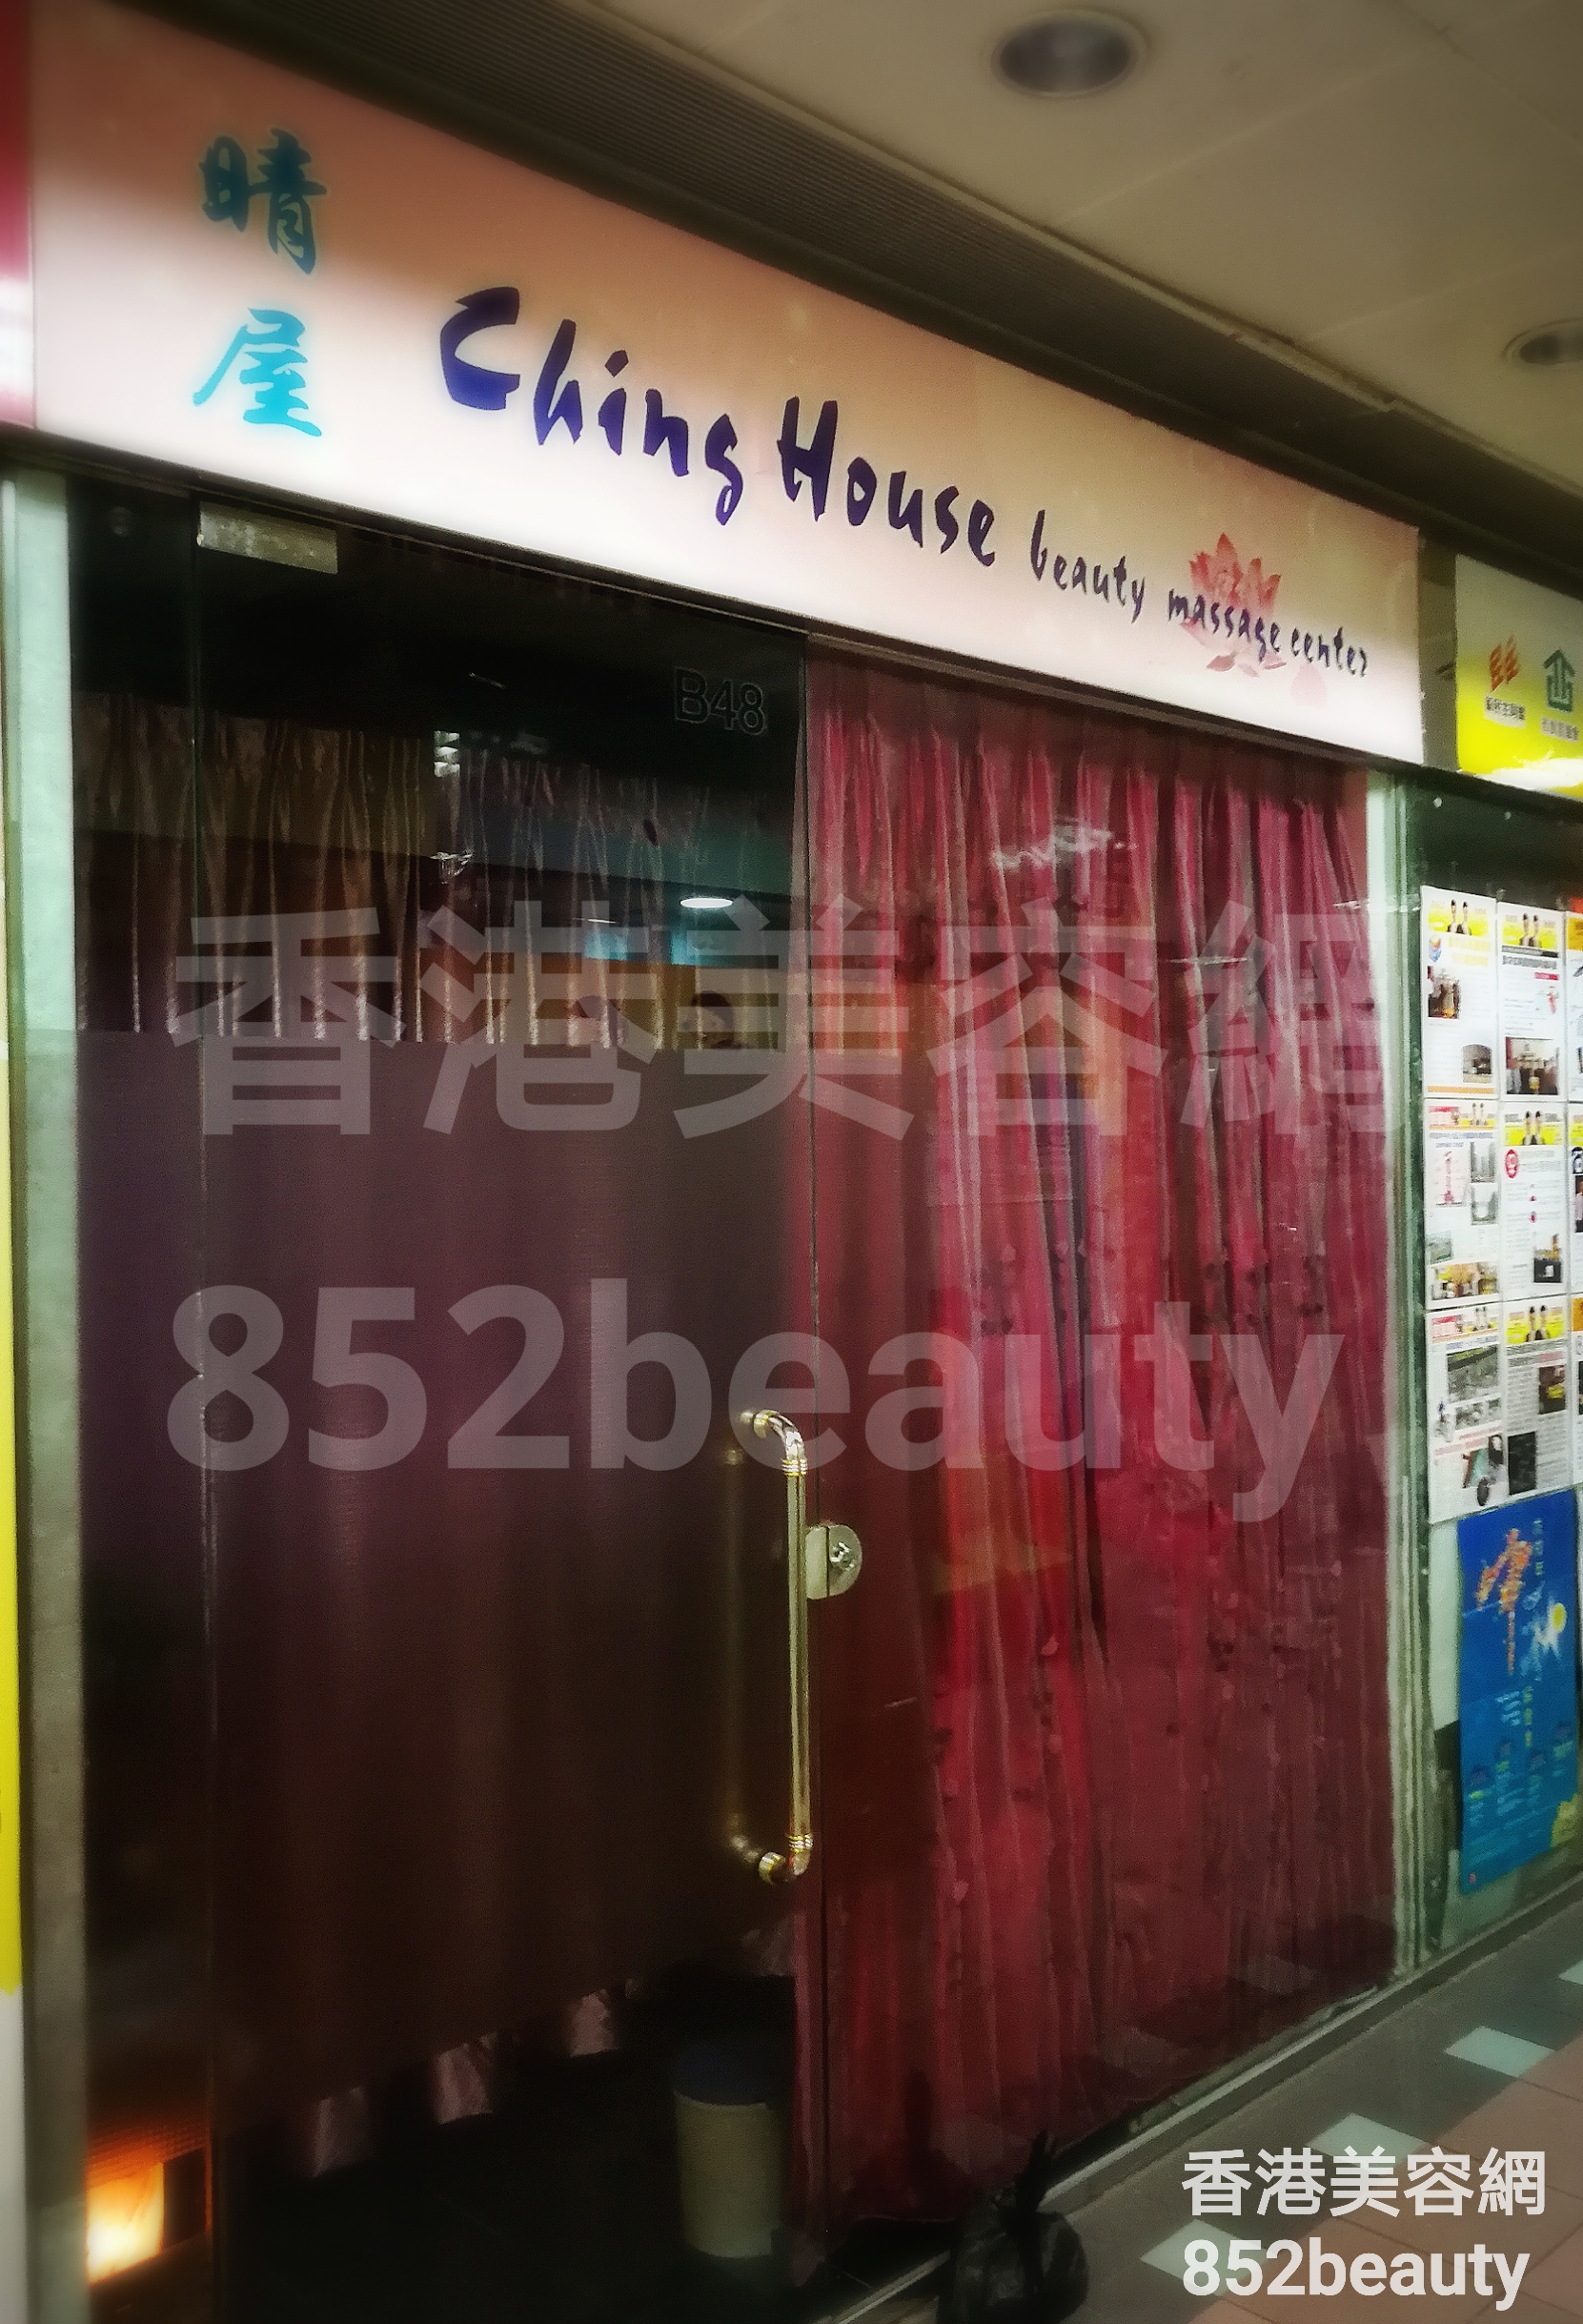 美容院: 晴屋 Ching House beauty massage center